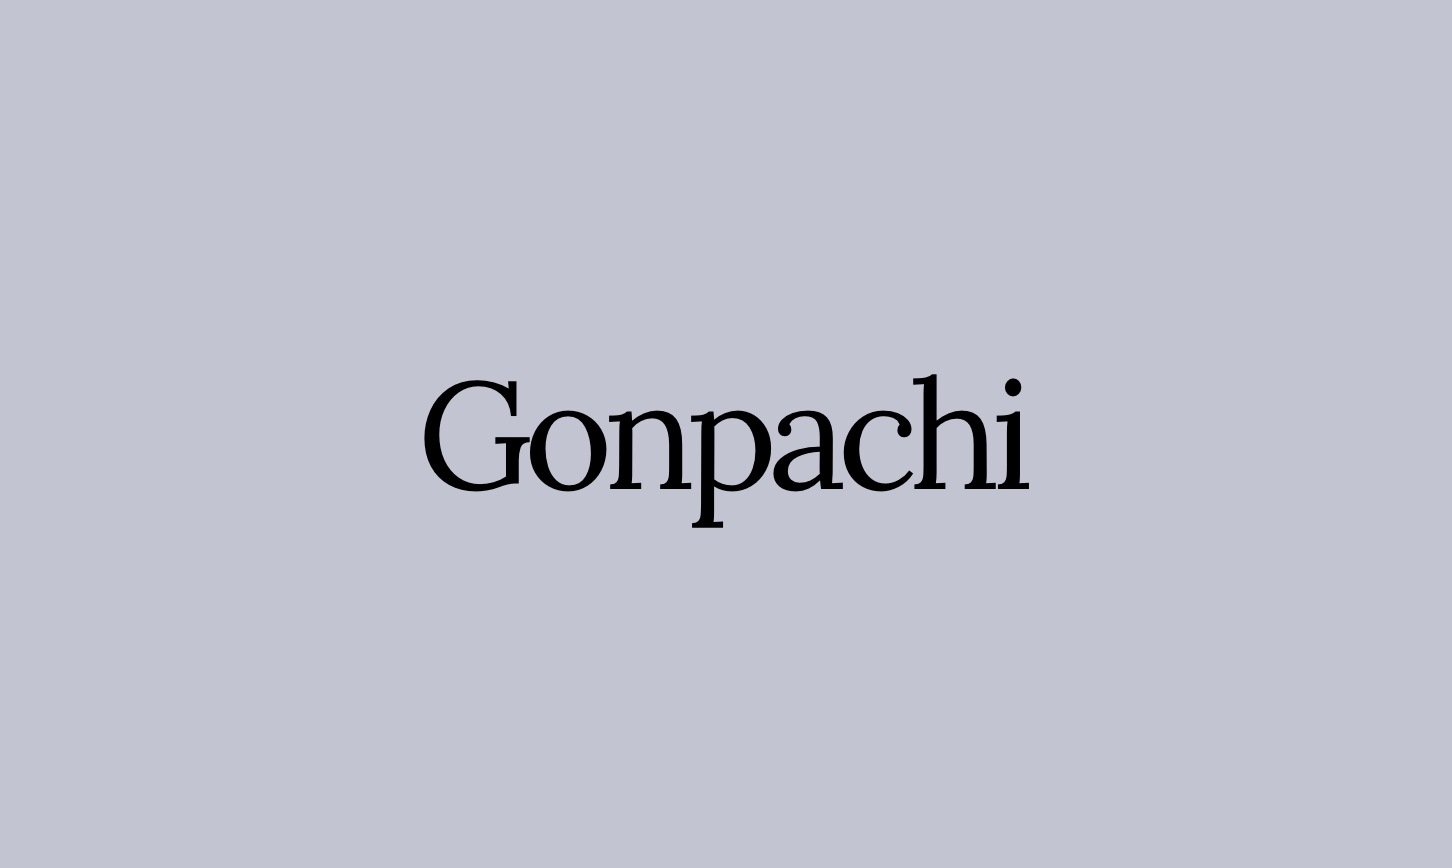 Gonpachi